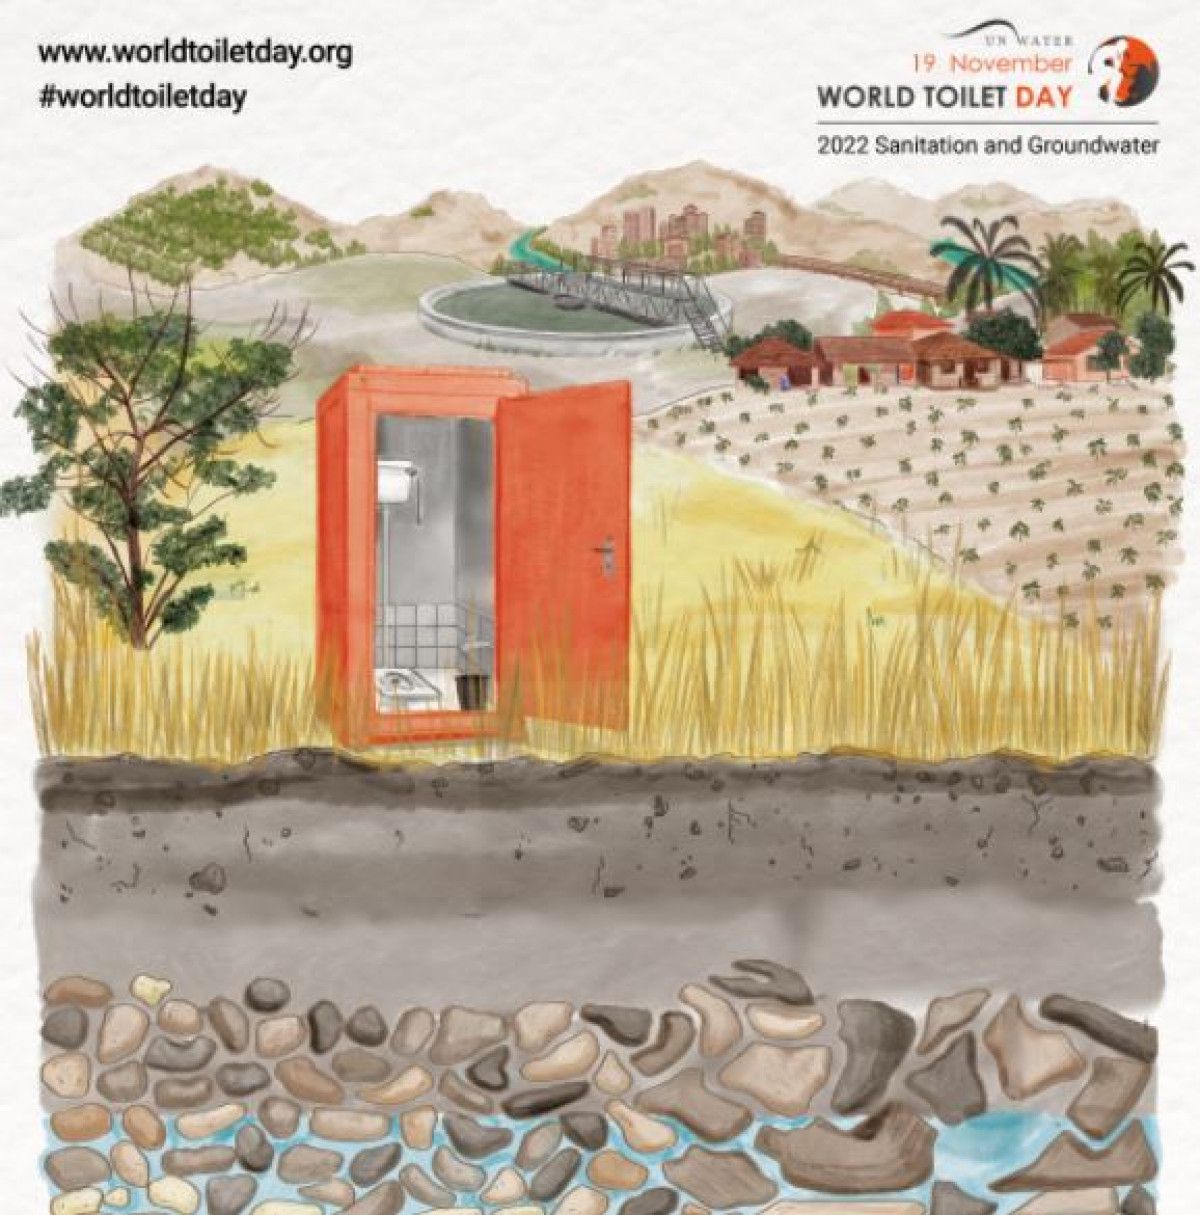 Birleşmiş Milletler’den  Dünya Tuvalet Günü  açıklaması #2